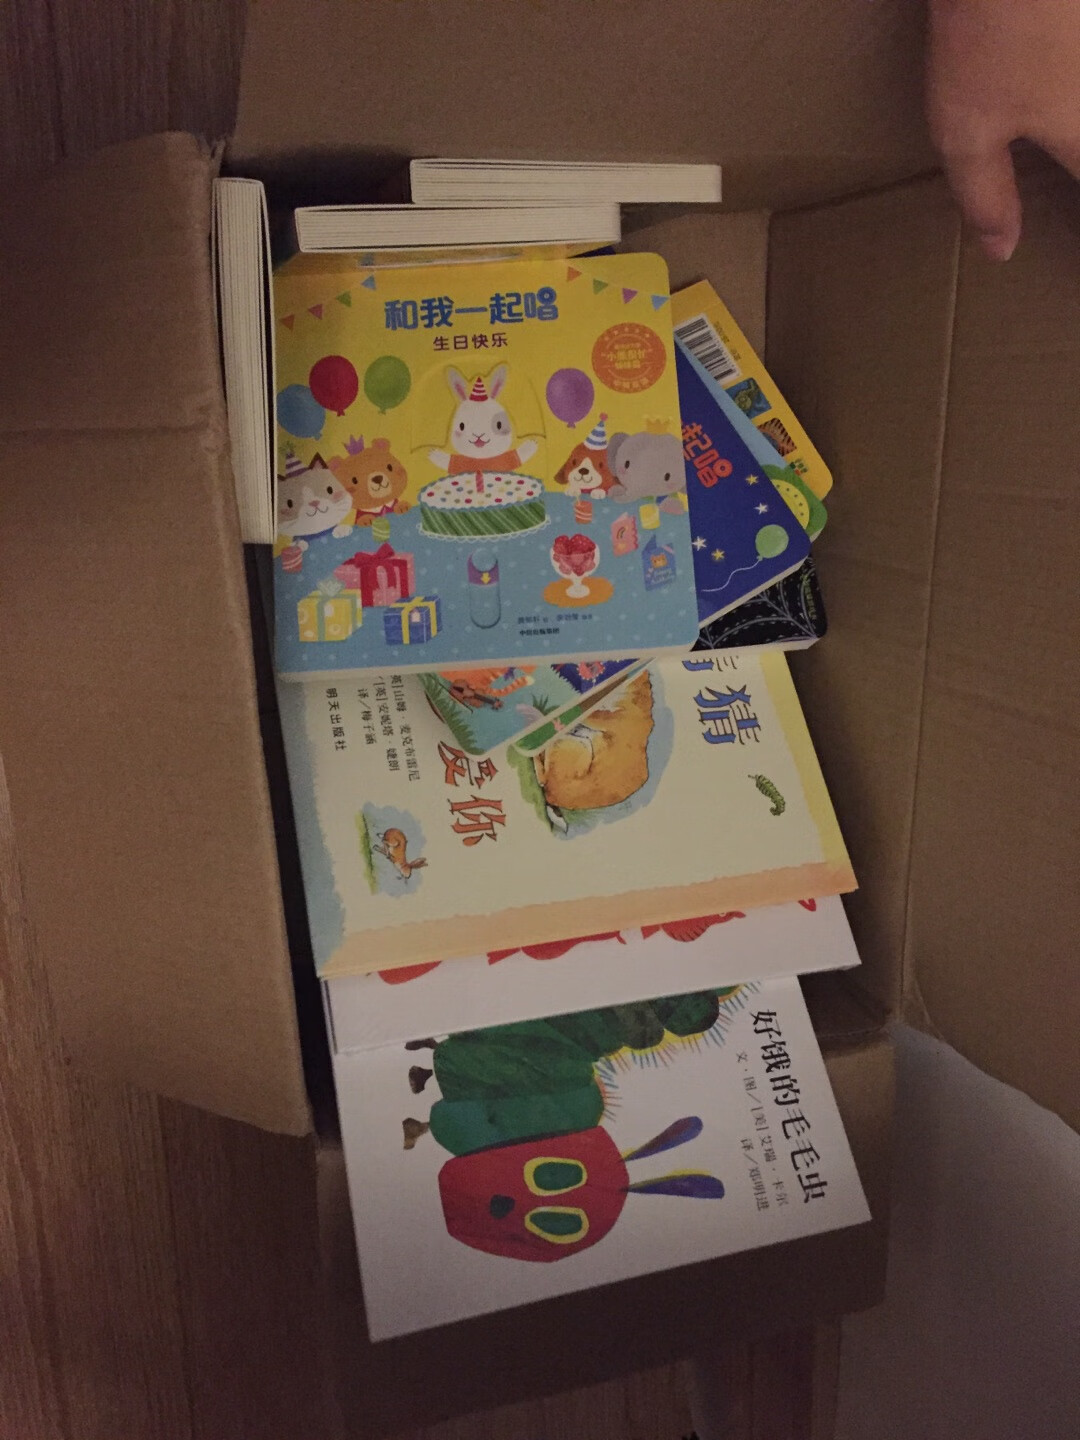 一箱子书，希望小朋友从小就爱上看书。